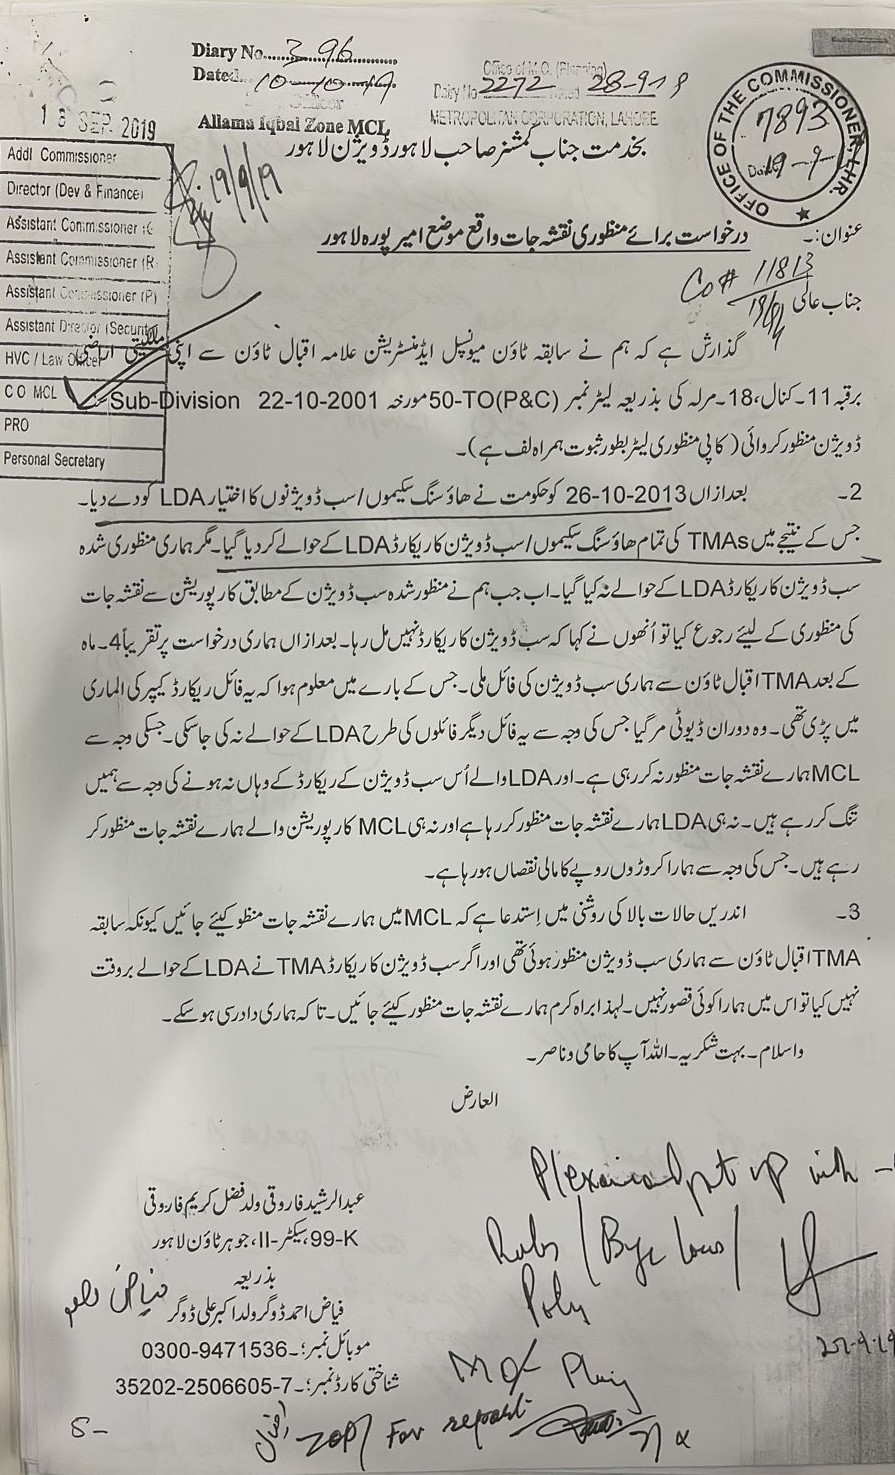 ہاؤسنگ سکیم کے نقشے کی منظوری کے لیے کمشنر لاہور کو دی گئی درخواست